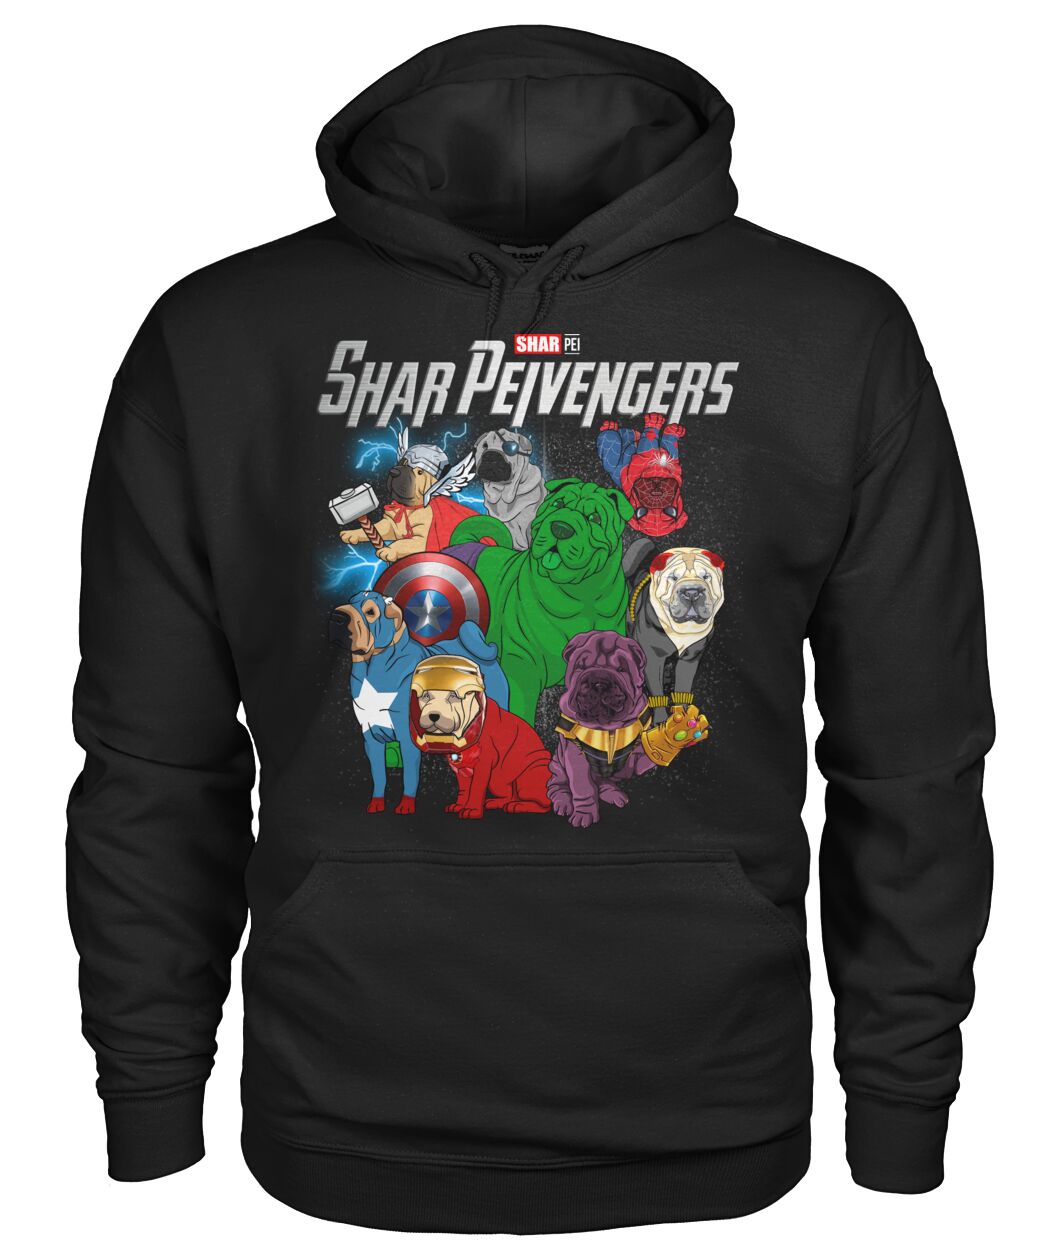 Shar Peivengers 3D Hoodie, Shirt 9